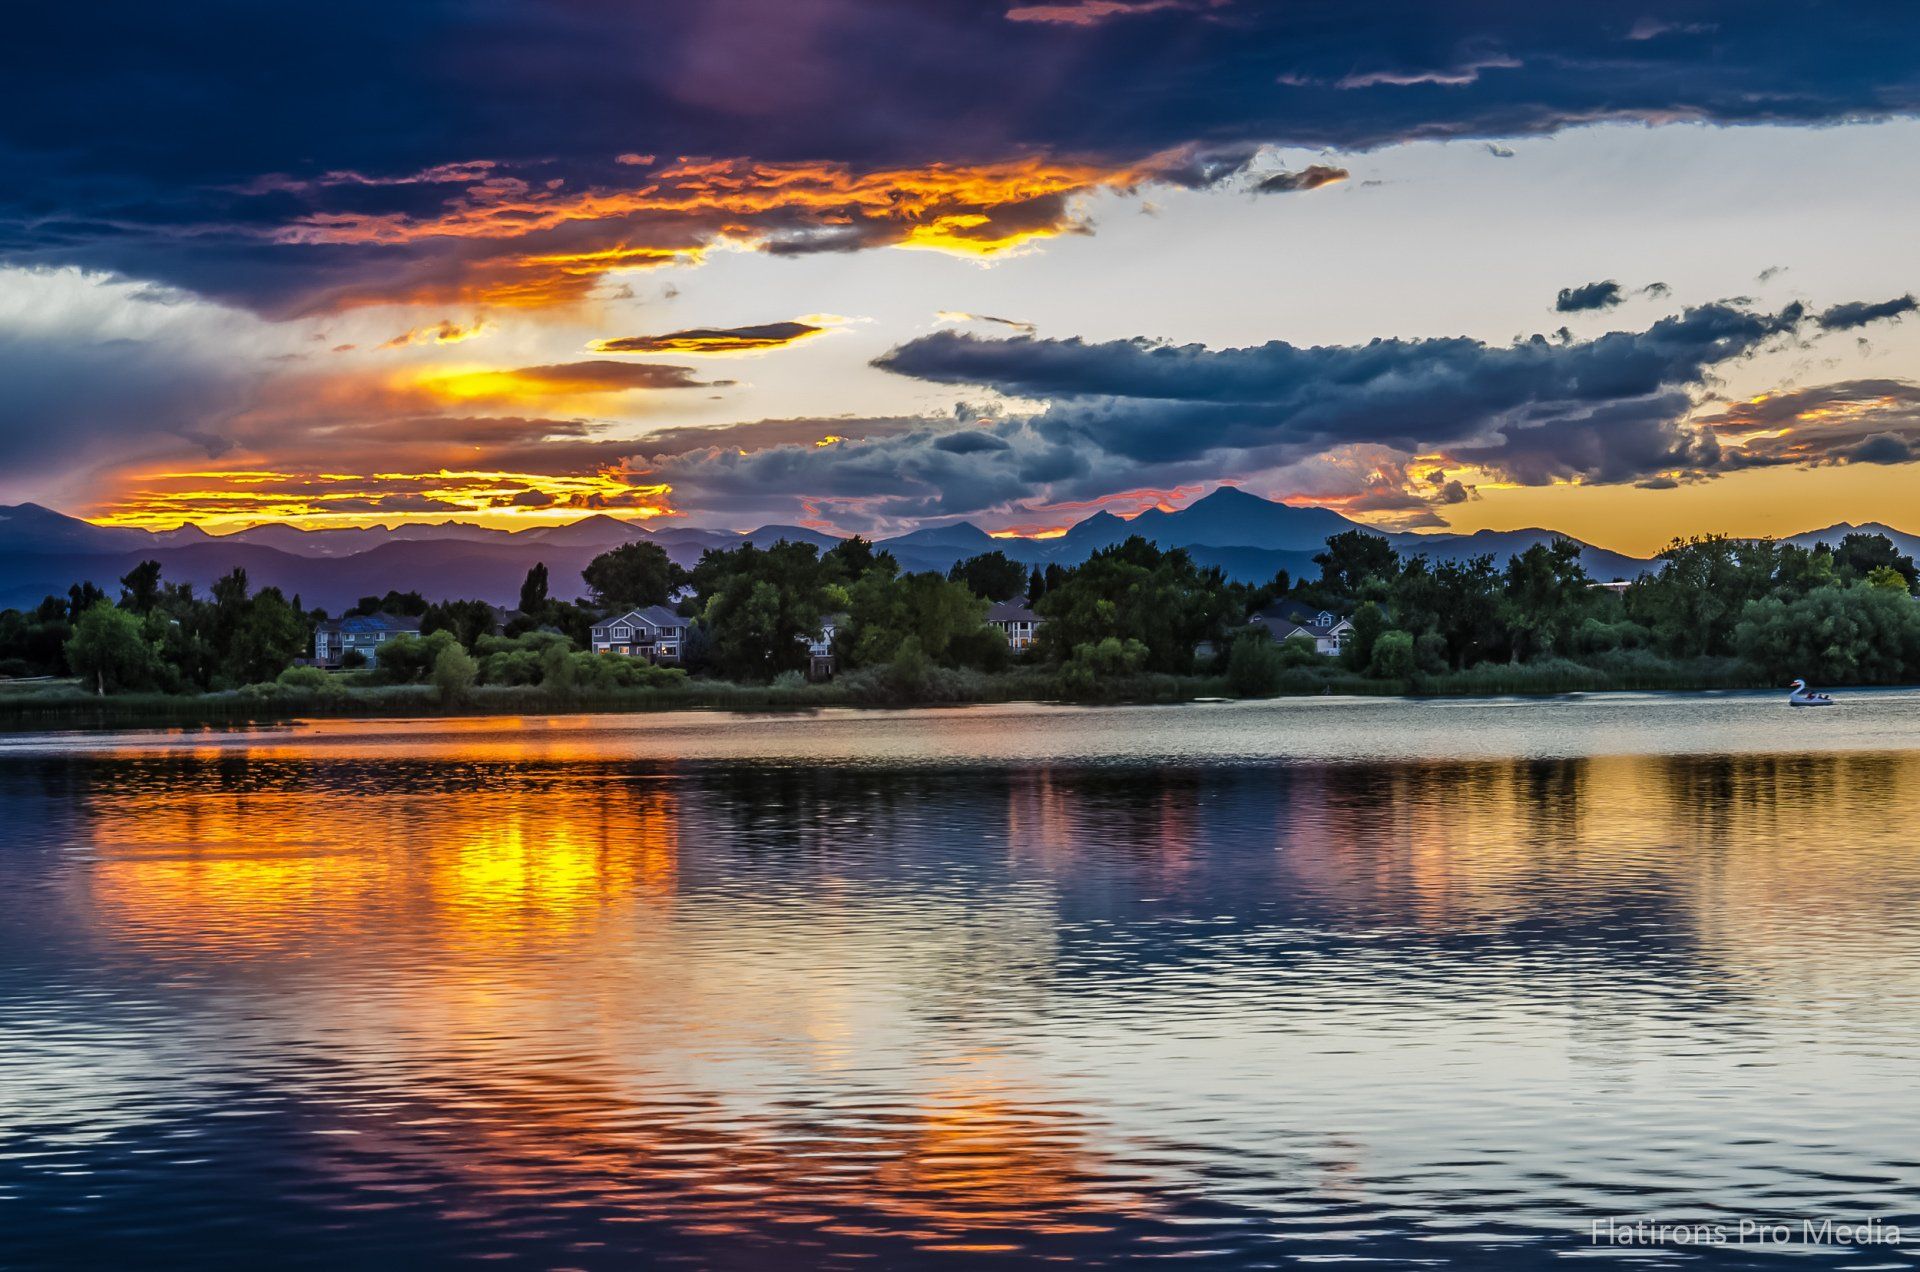 Lake view at dusk Lafayette, Colorado. Photo Credit Lafayette-Waneka Lake.flatironspromedia.JPG